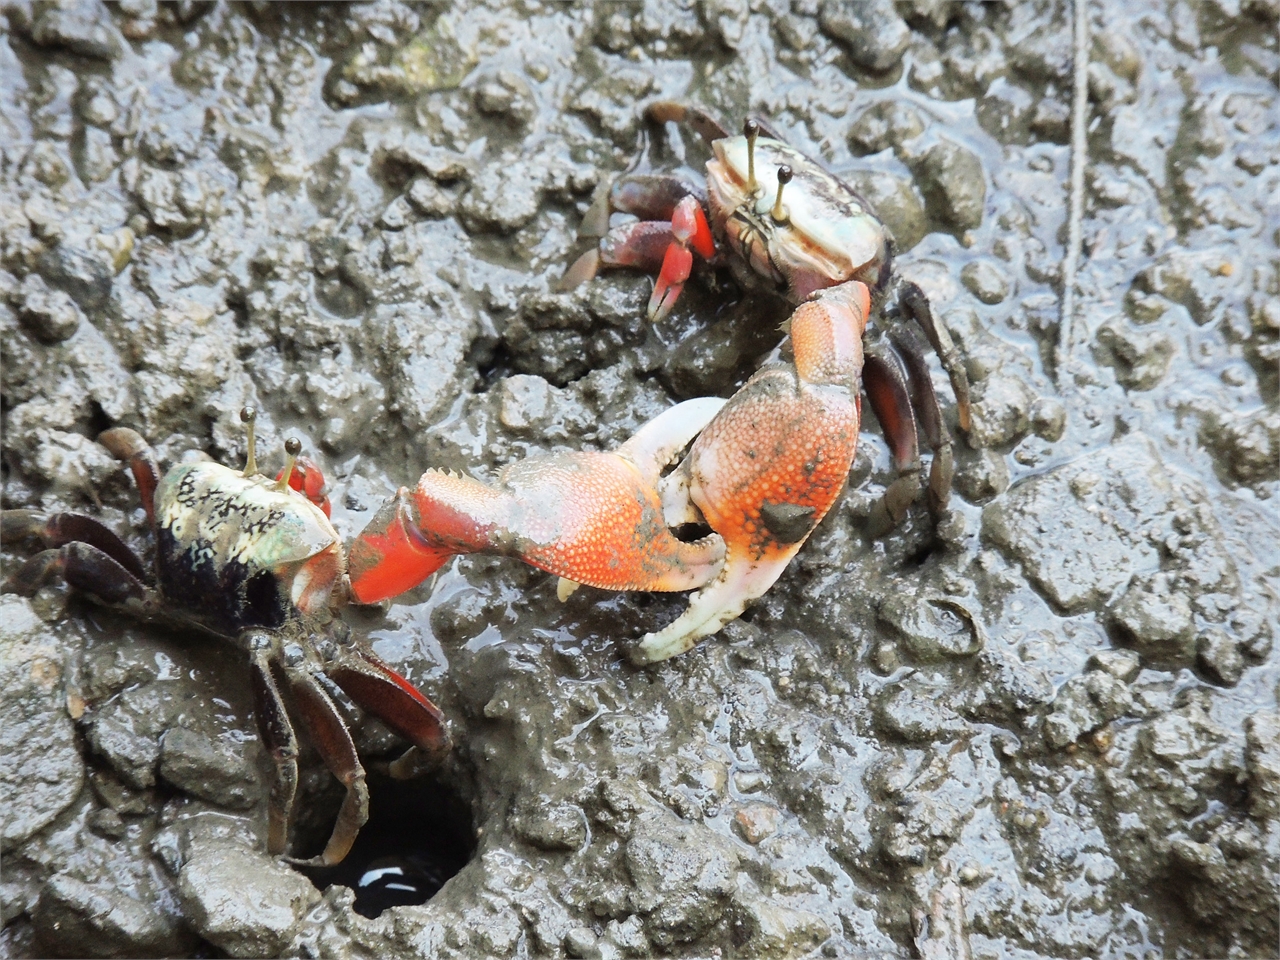 Retikulierte Krabben bekämpfen sich gegenseitig